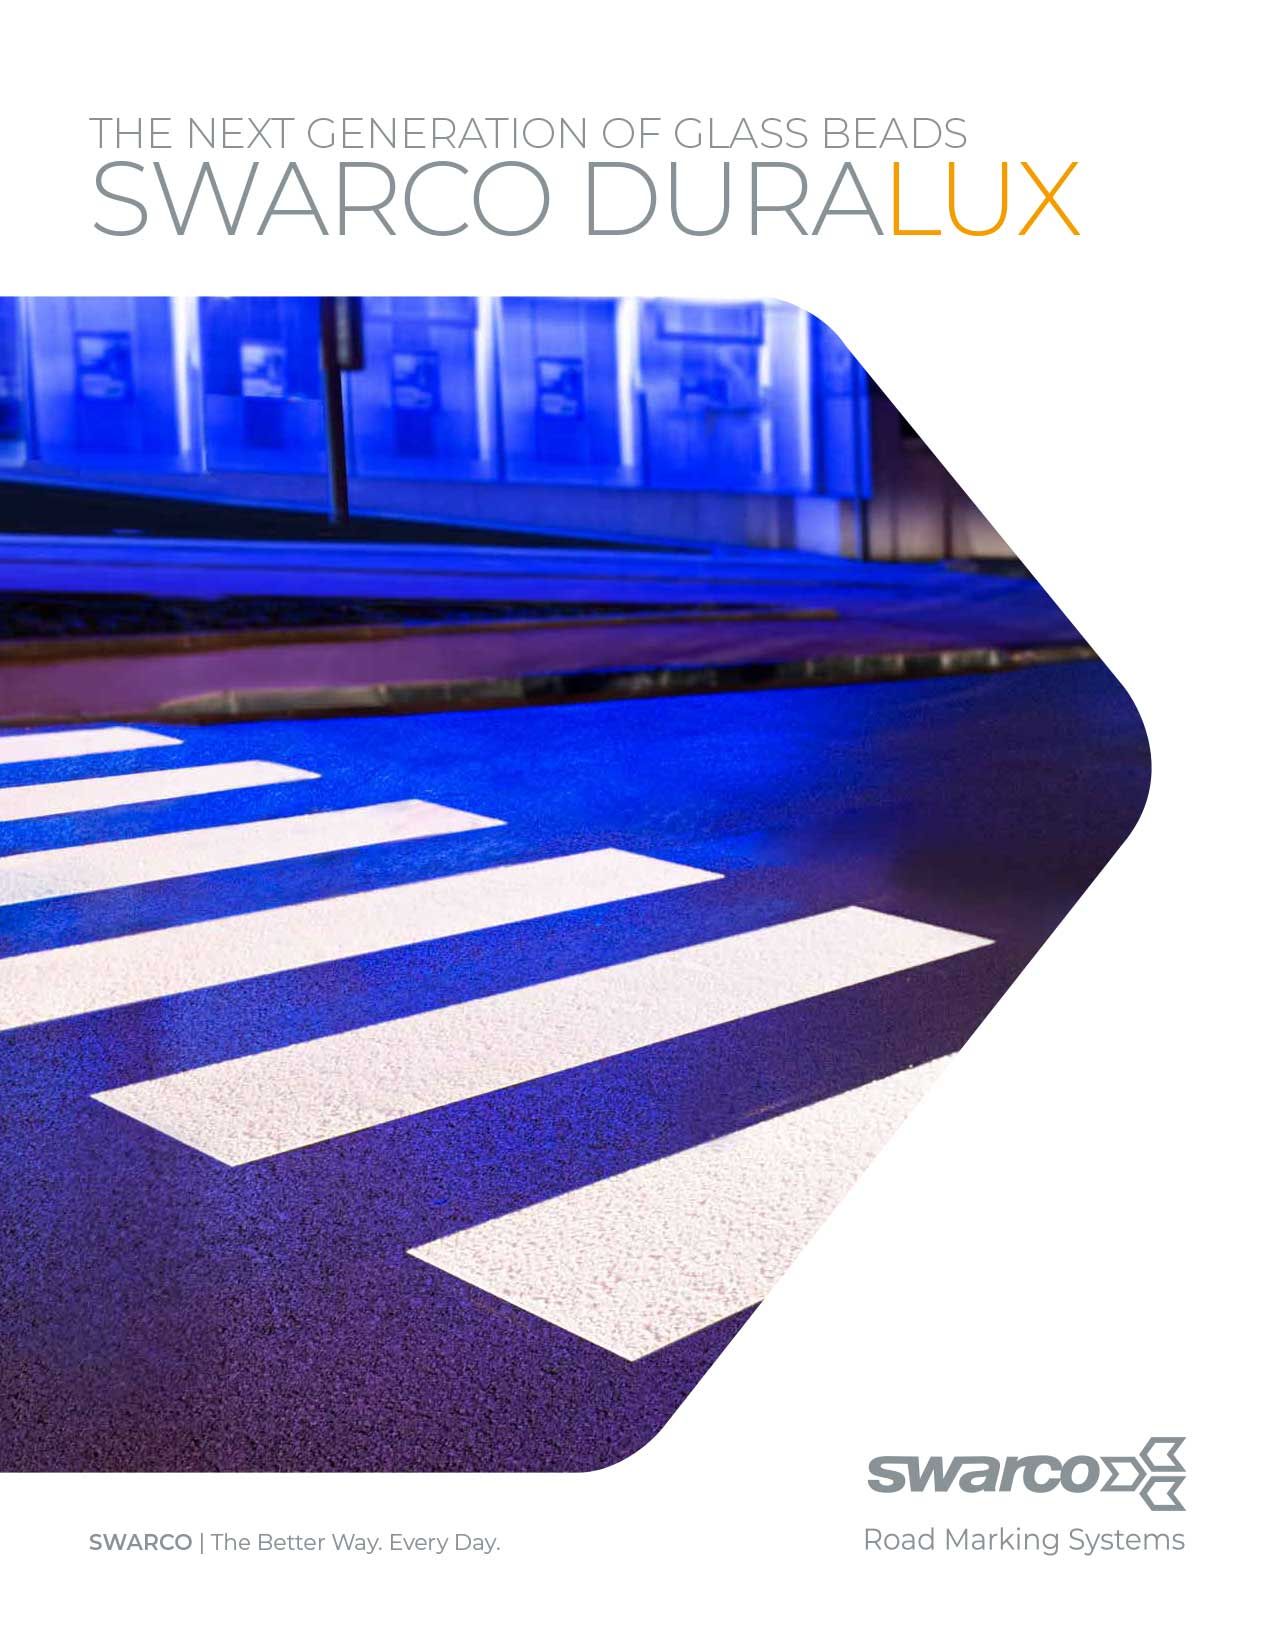 SWARCO DURALUX Brochure